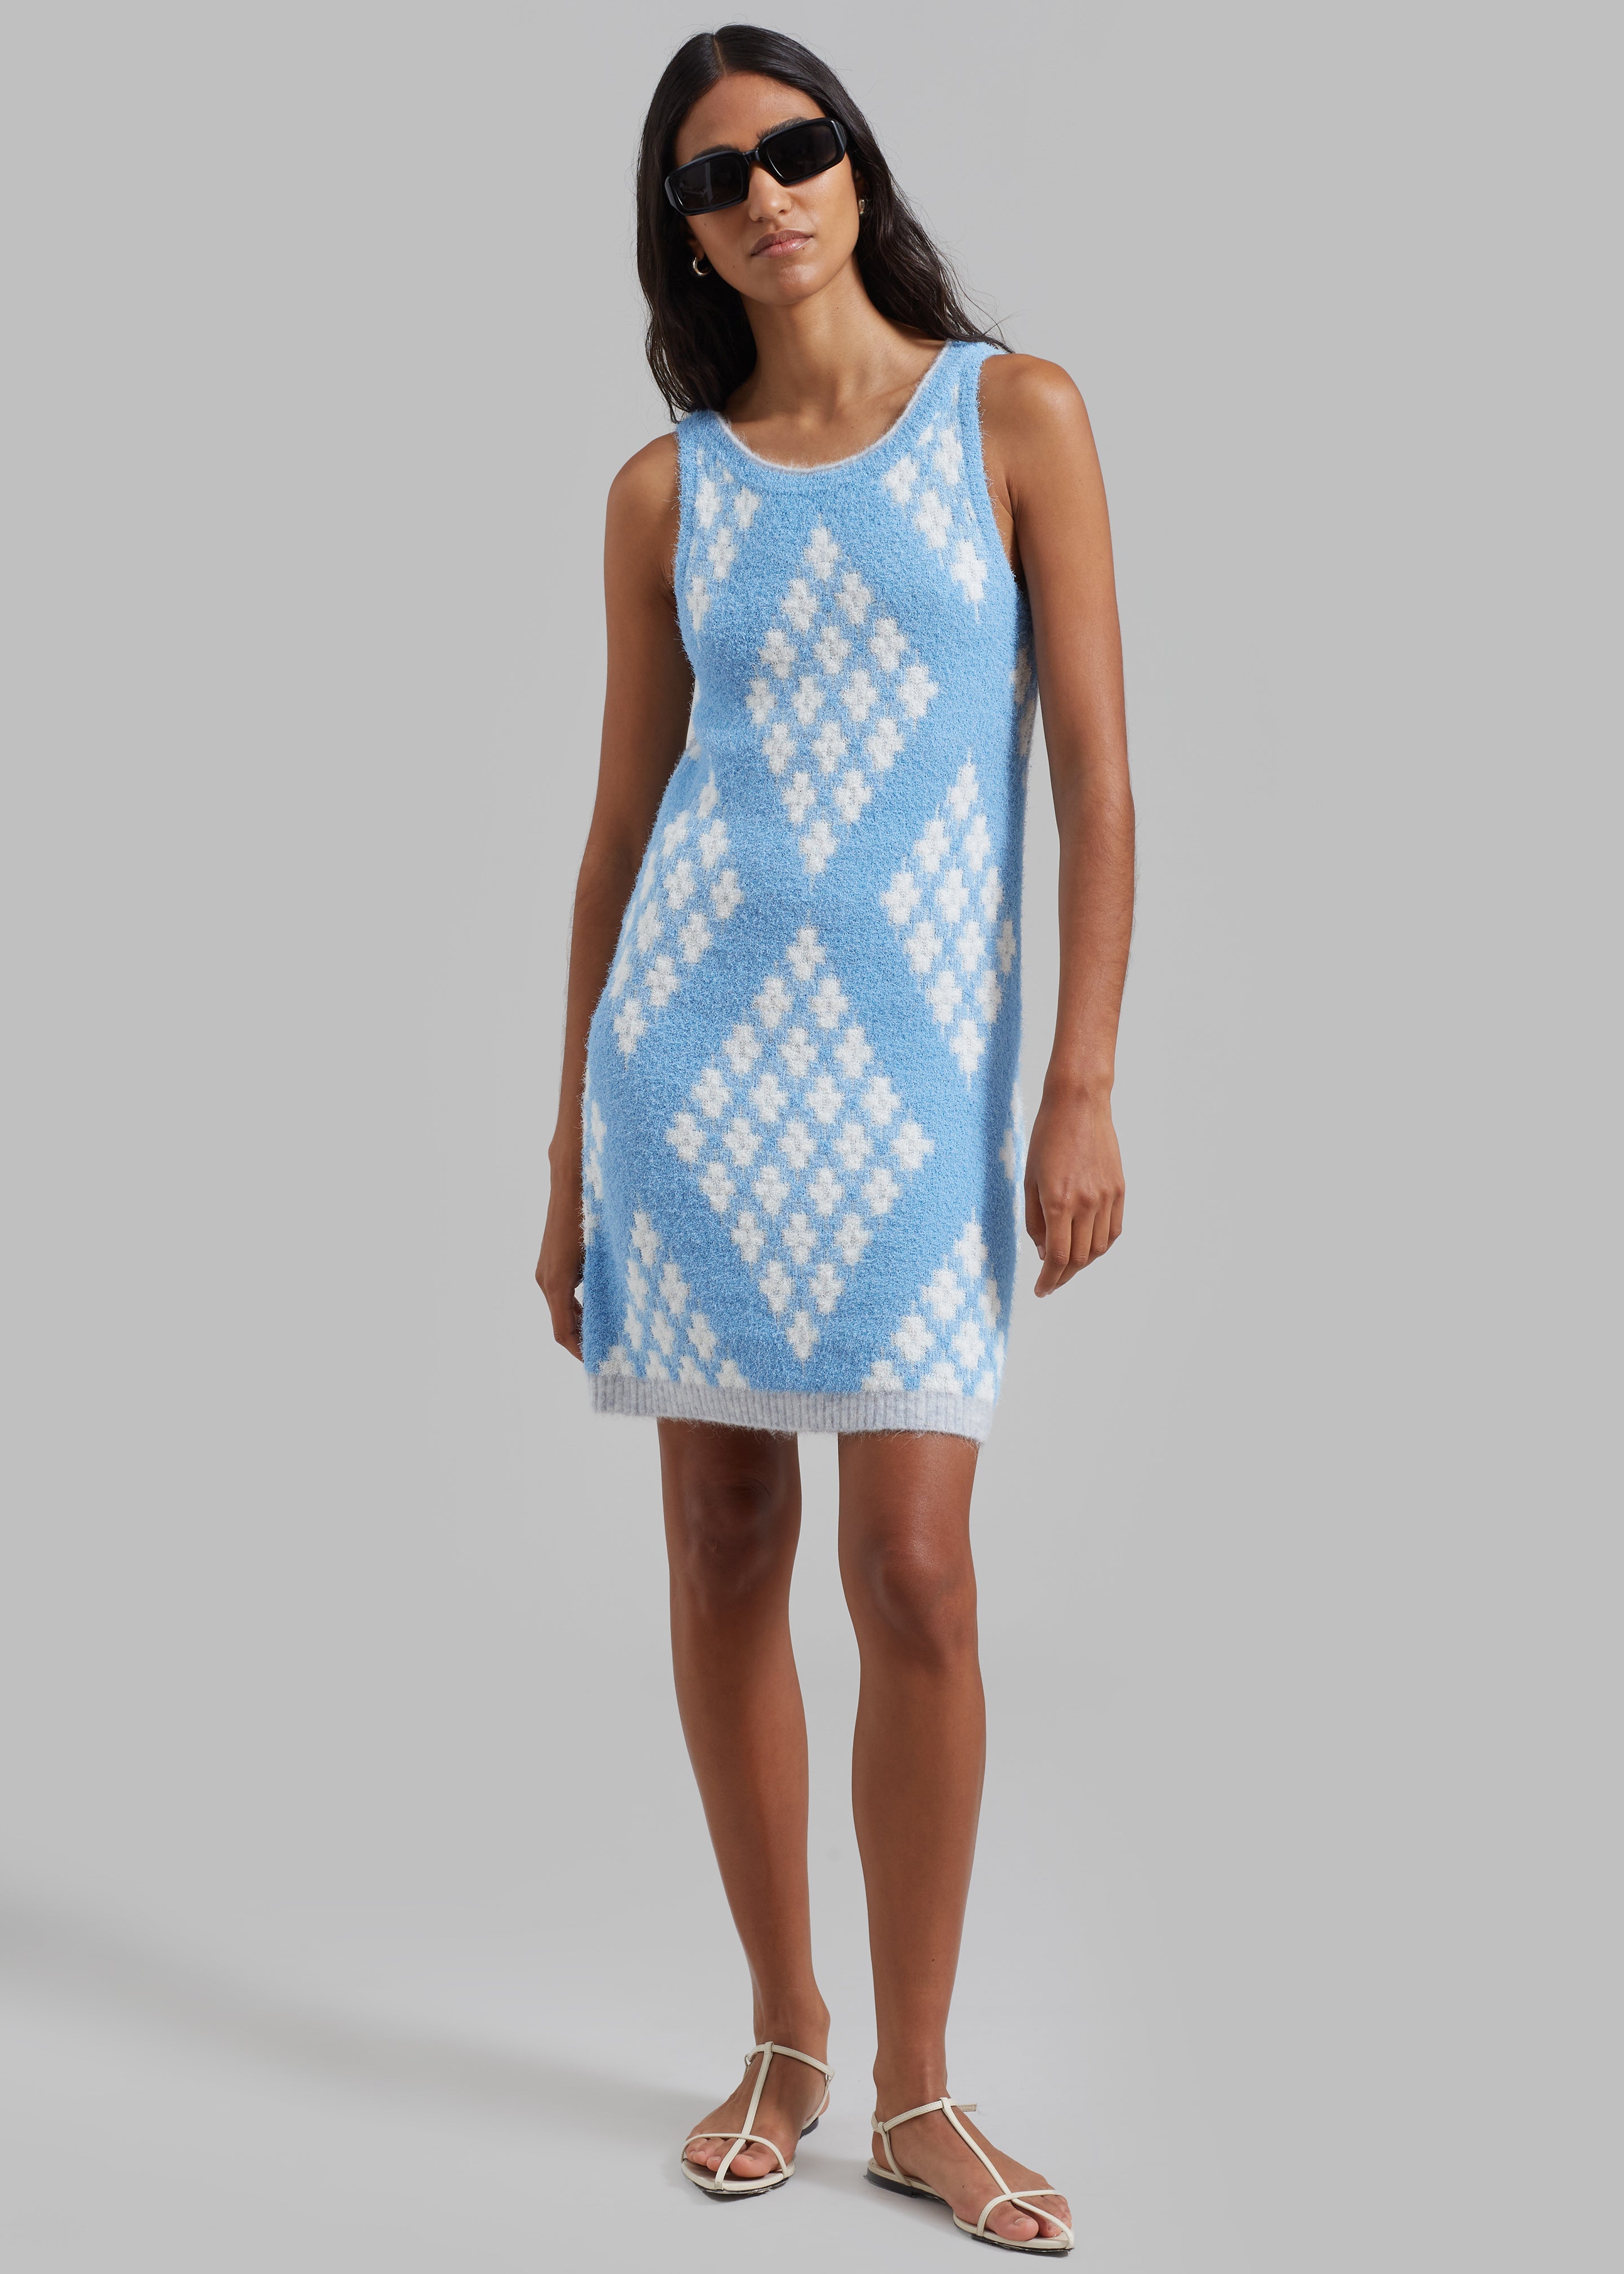 3.1 Phillip Lim Argyle Jacquard Sleeveless Mini Dress - Hudson Blue/Multi - 5